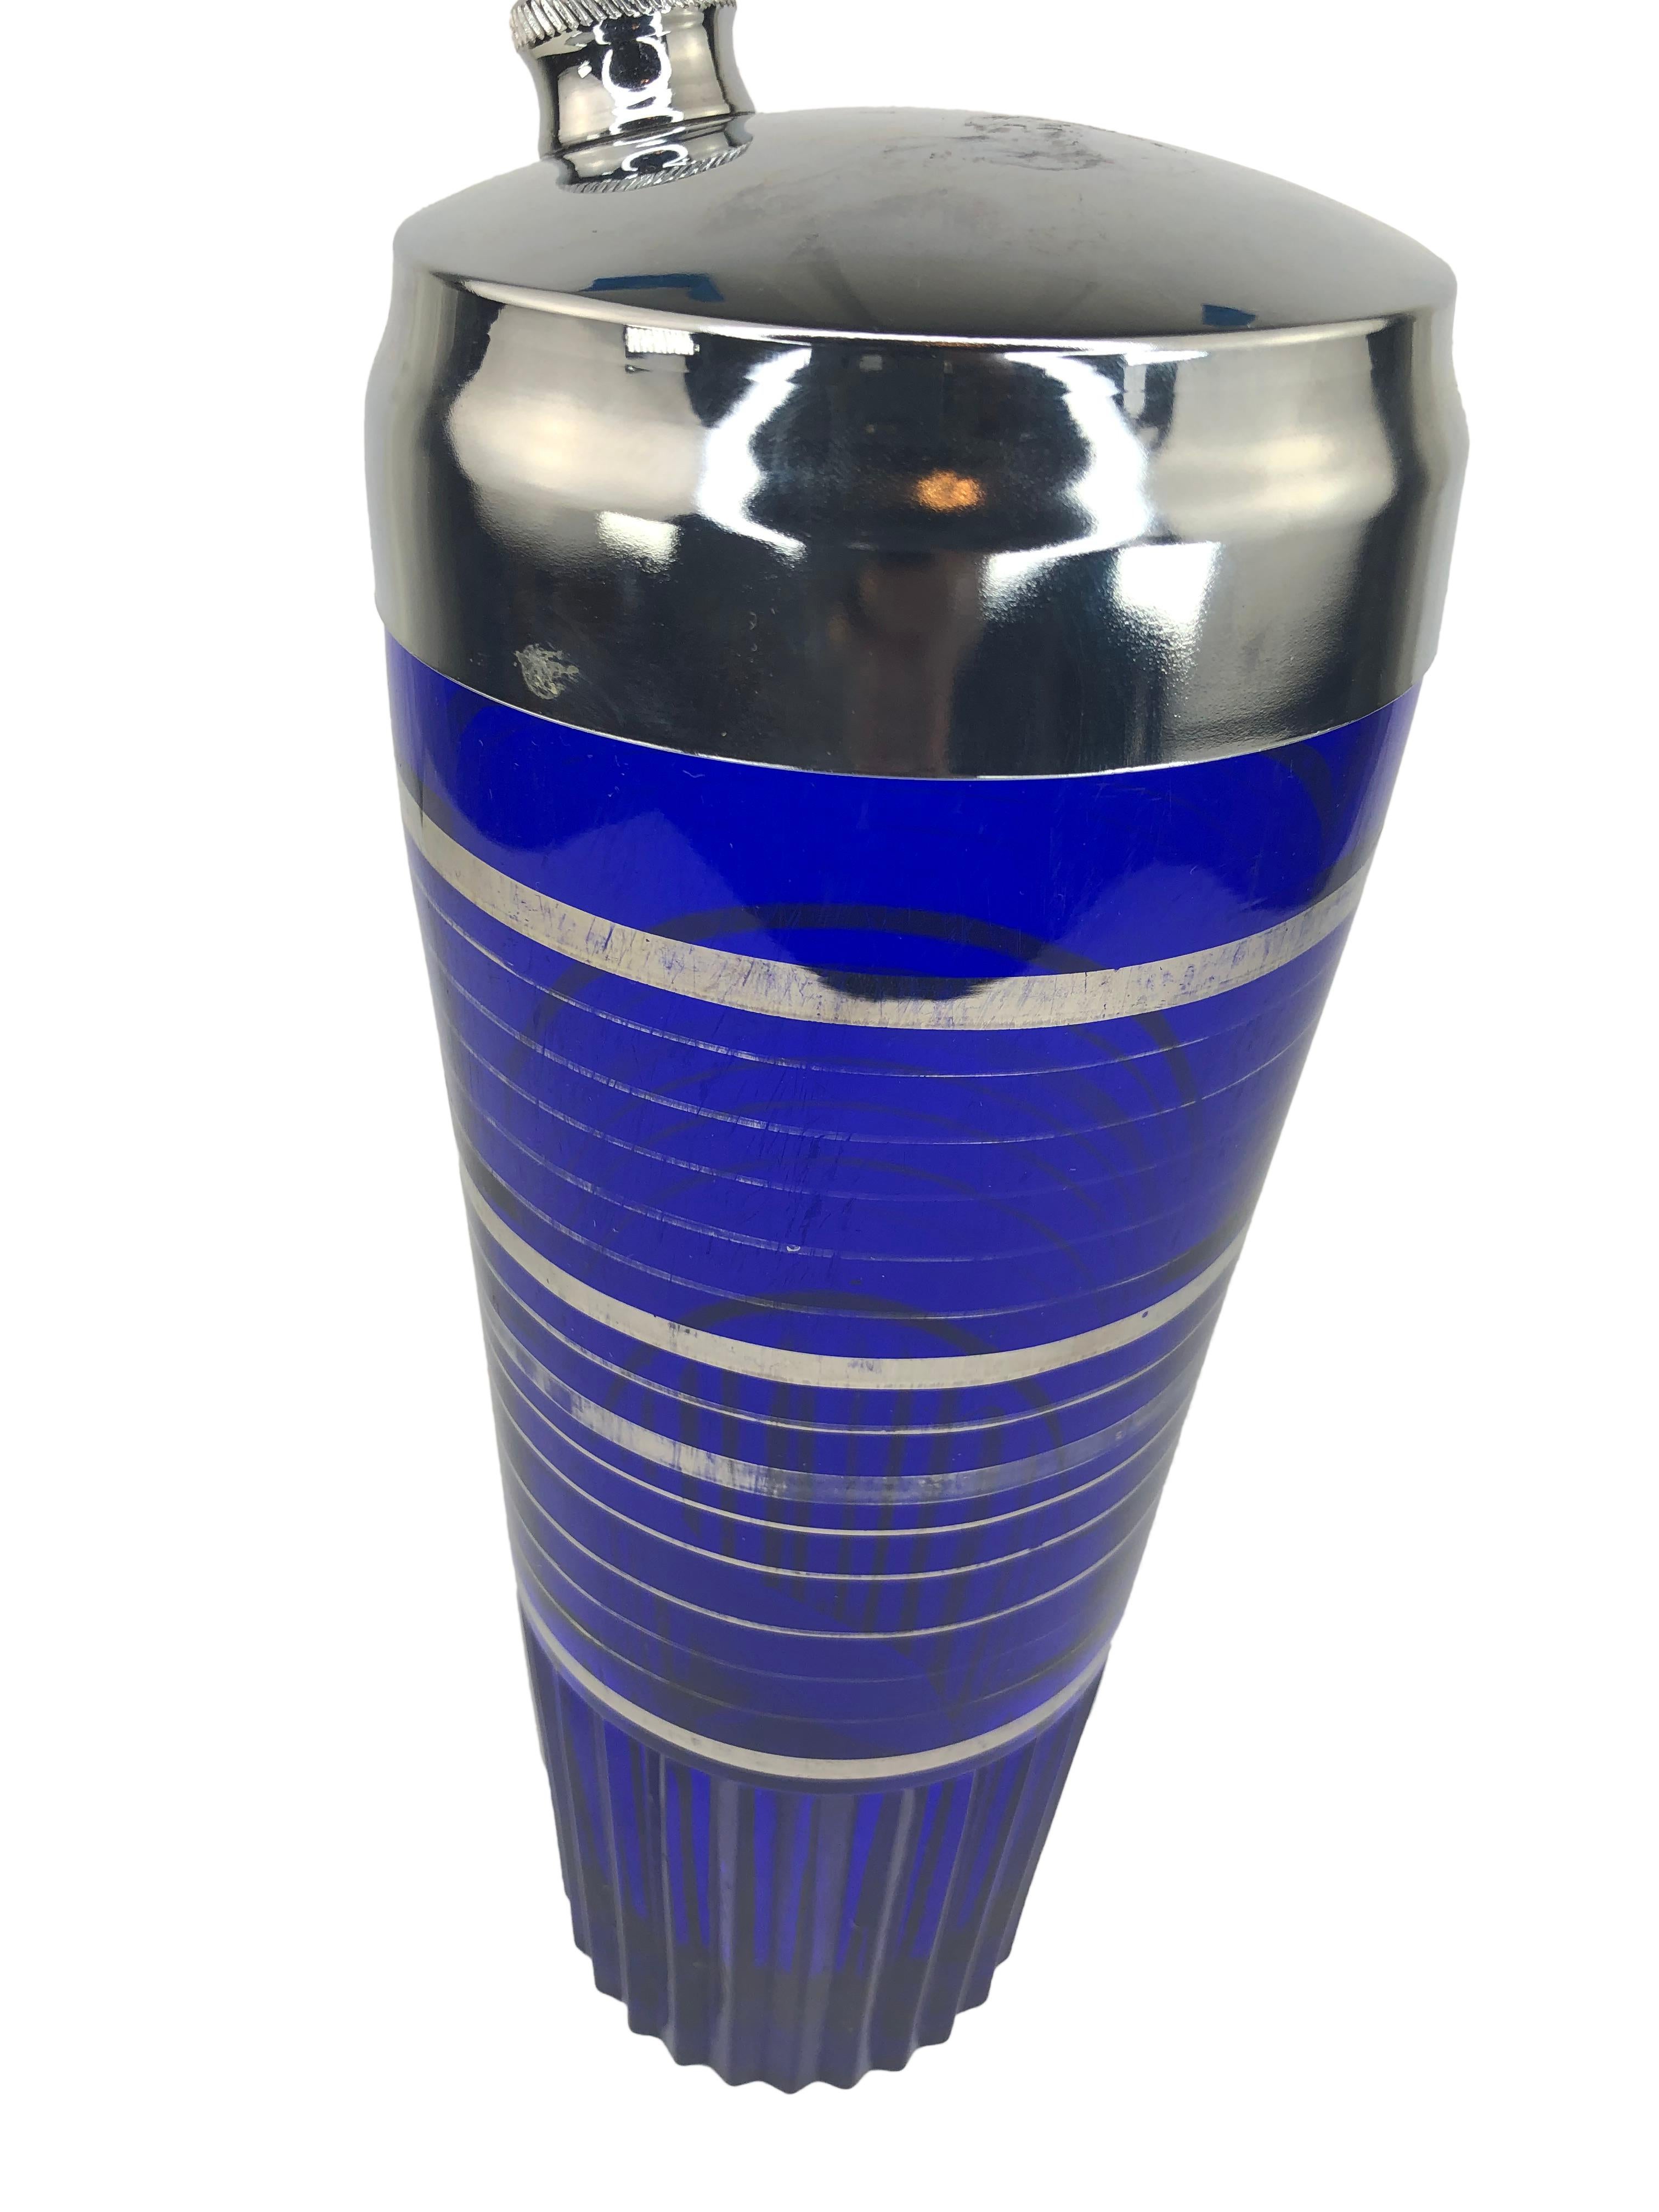 Art Deco kobaltblauer Cocktail Shaker mit silbernen Überzügen und geriffeltem Boden. Shakers hat einen kleinen Chip an der Basis, in Fotos gezeigt. Alters- und gebrauchsbedingte Abnutzung der Silberoberfläche.
 8 1/4